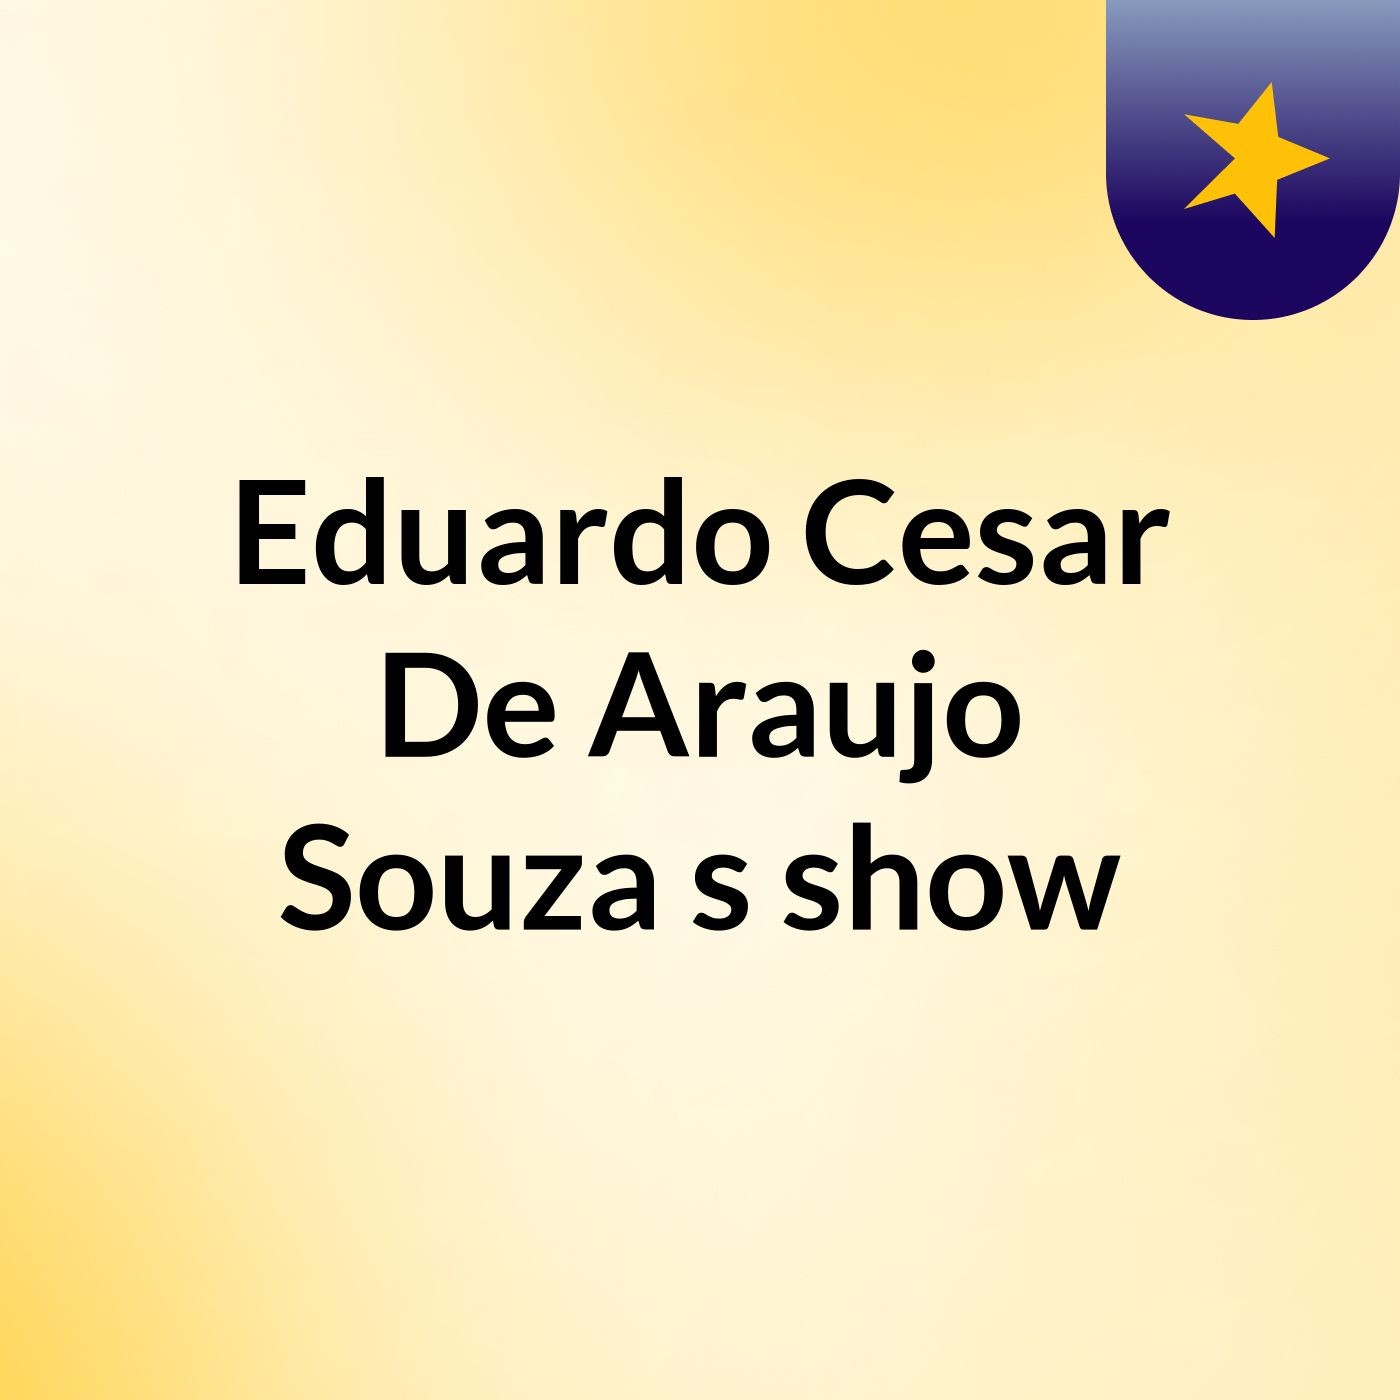 Eduardo Cesar De Araujo Souza's show